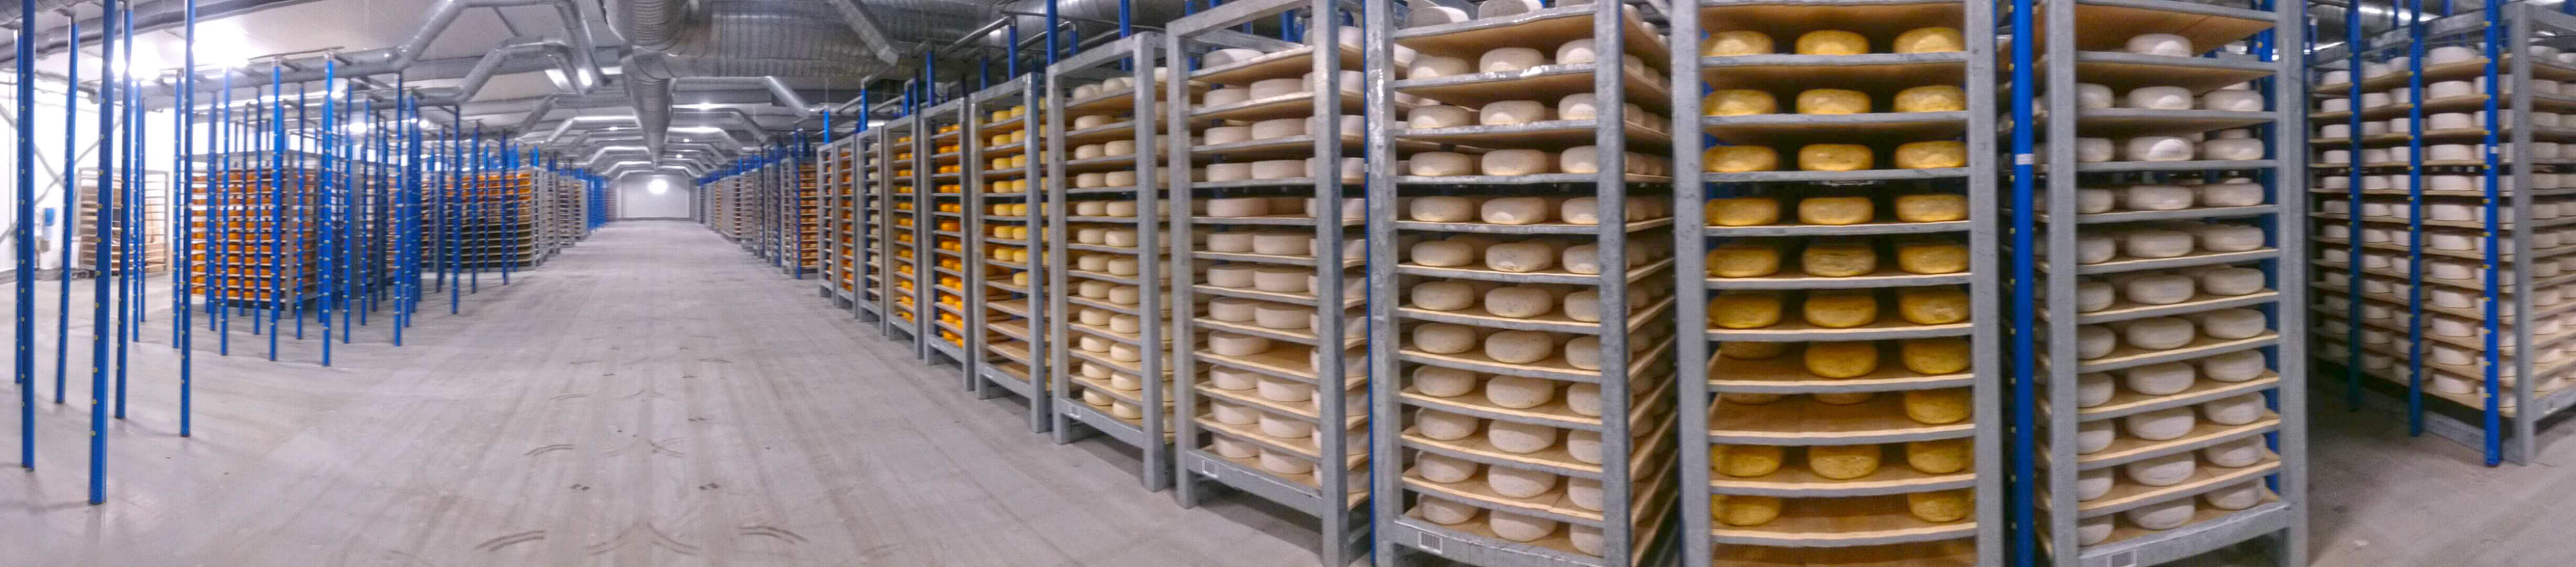 Cheese Converting Machinery  Cheese Converting Equipment